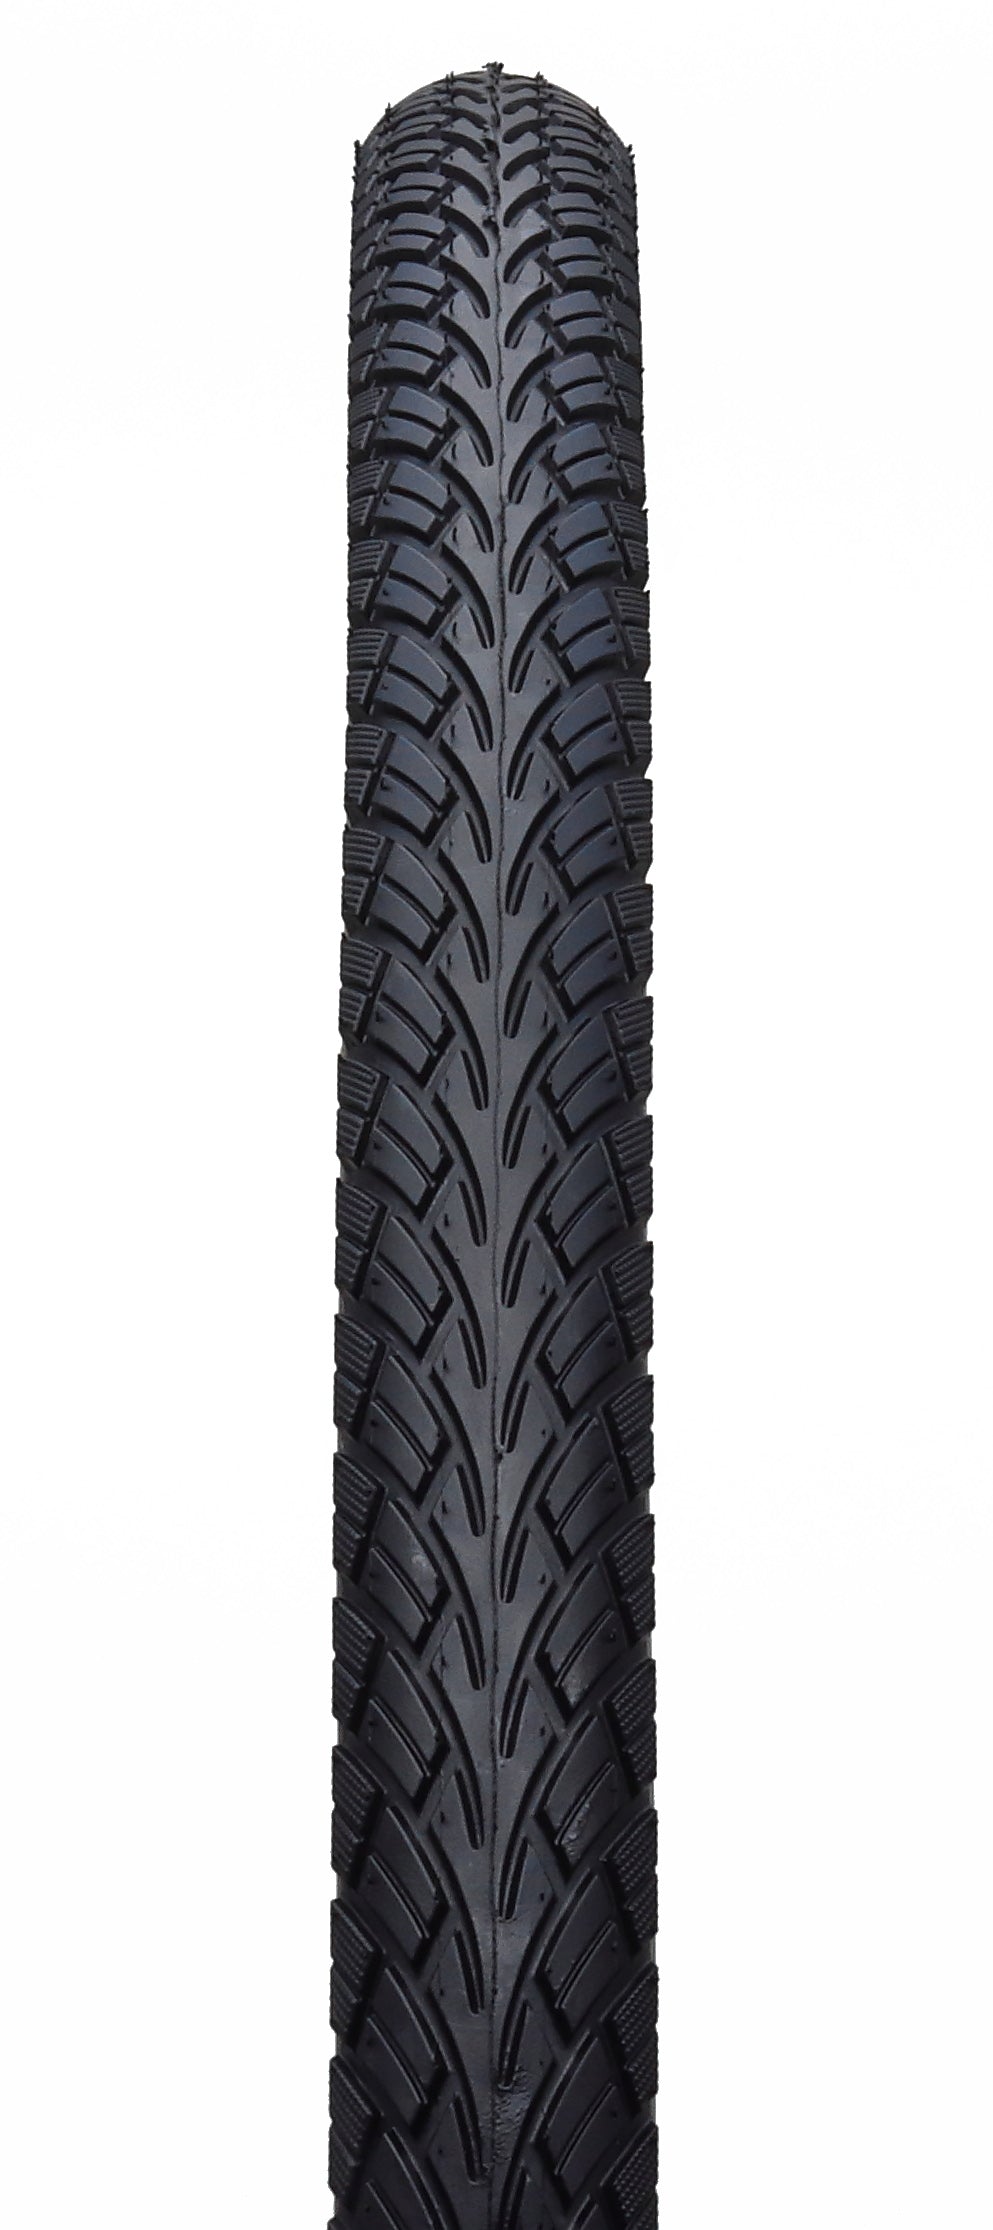 Edge Tire Street 16 x 1,75 47-305 mm nero con riflesso